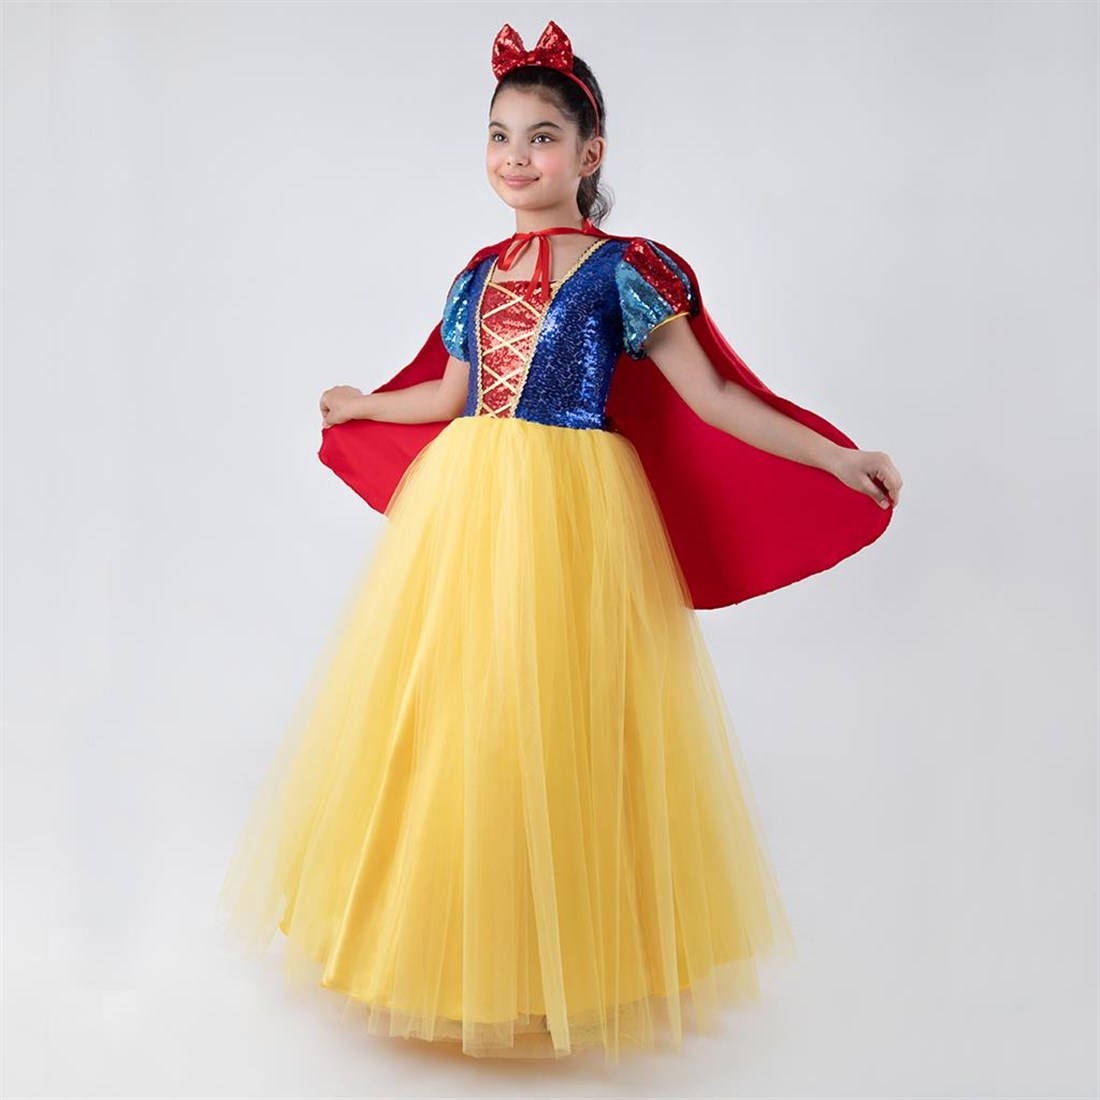 Pamuk Prenses Kostümü - Pelerinli Prenses Kostümü Full Set 9-11 Yaş (CLZ)